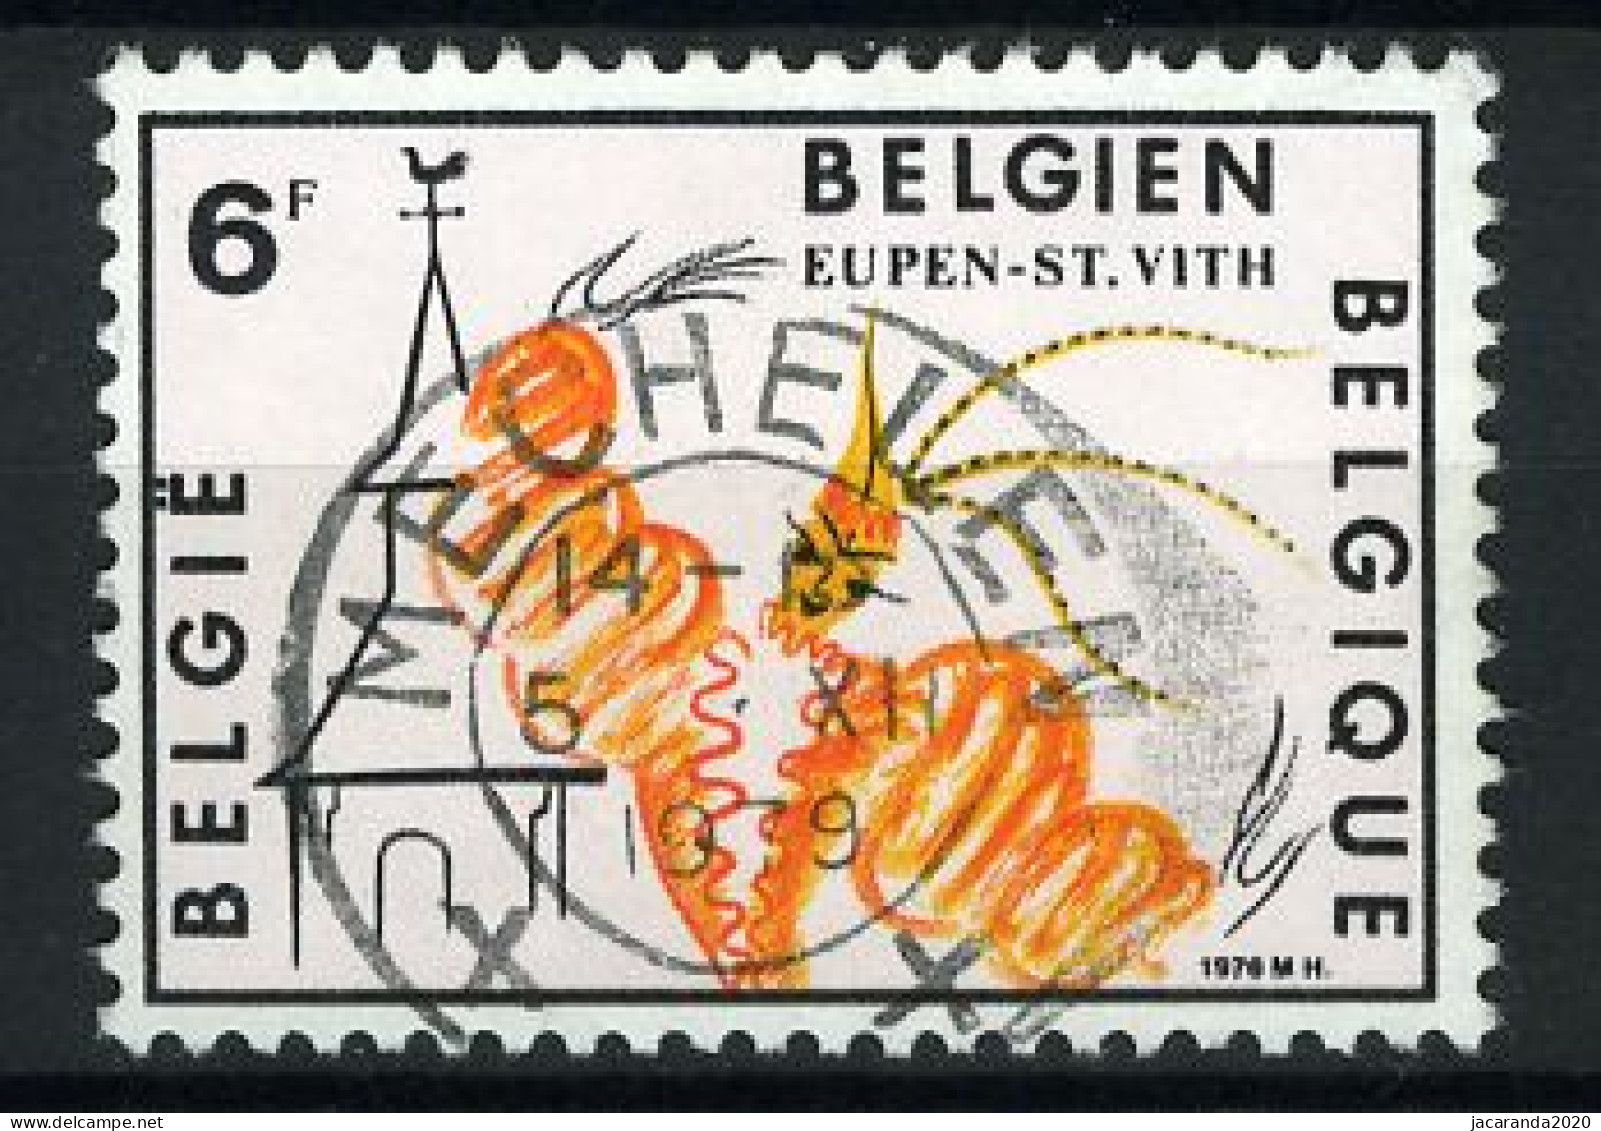 België 1910 - Toerisme - Eupen - Sankt-Vith - Gestempeld - Oblitéré -used - Used Stamps